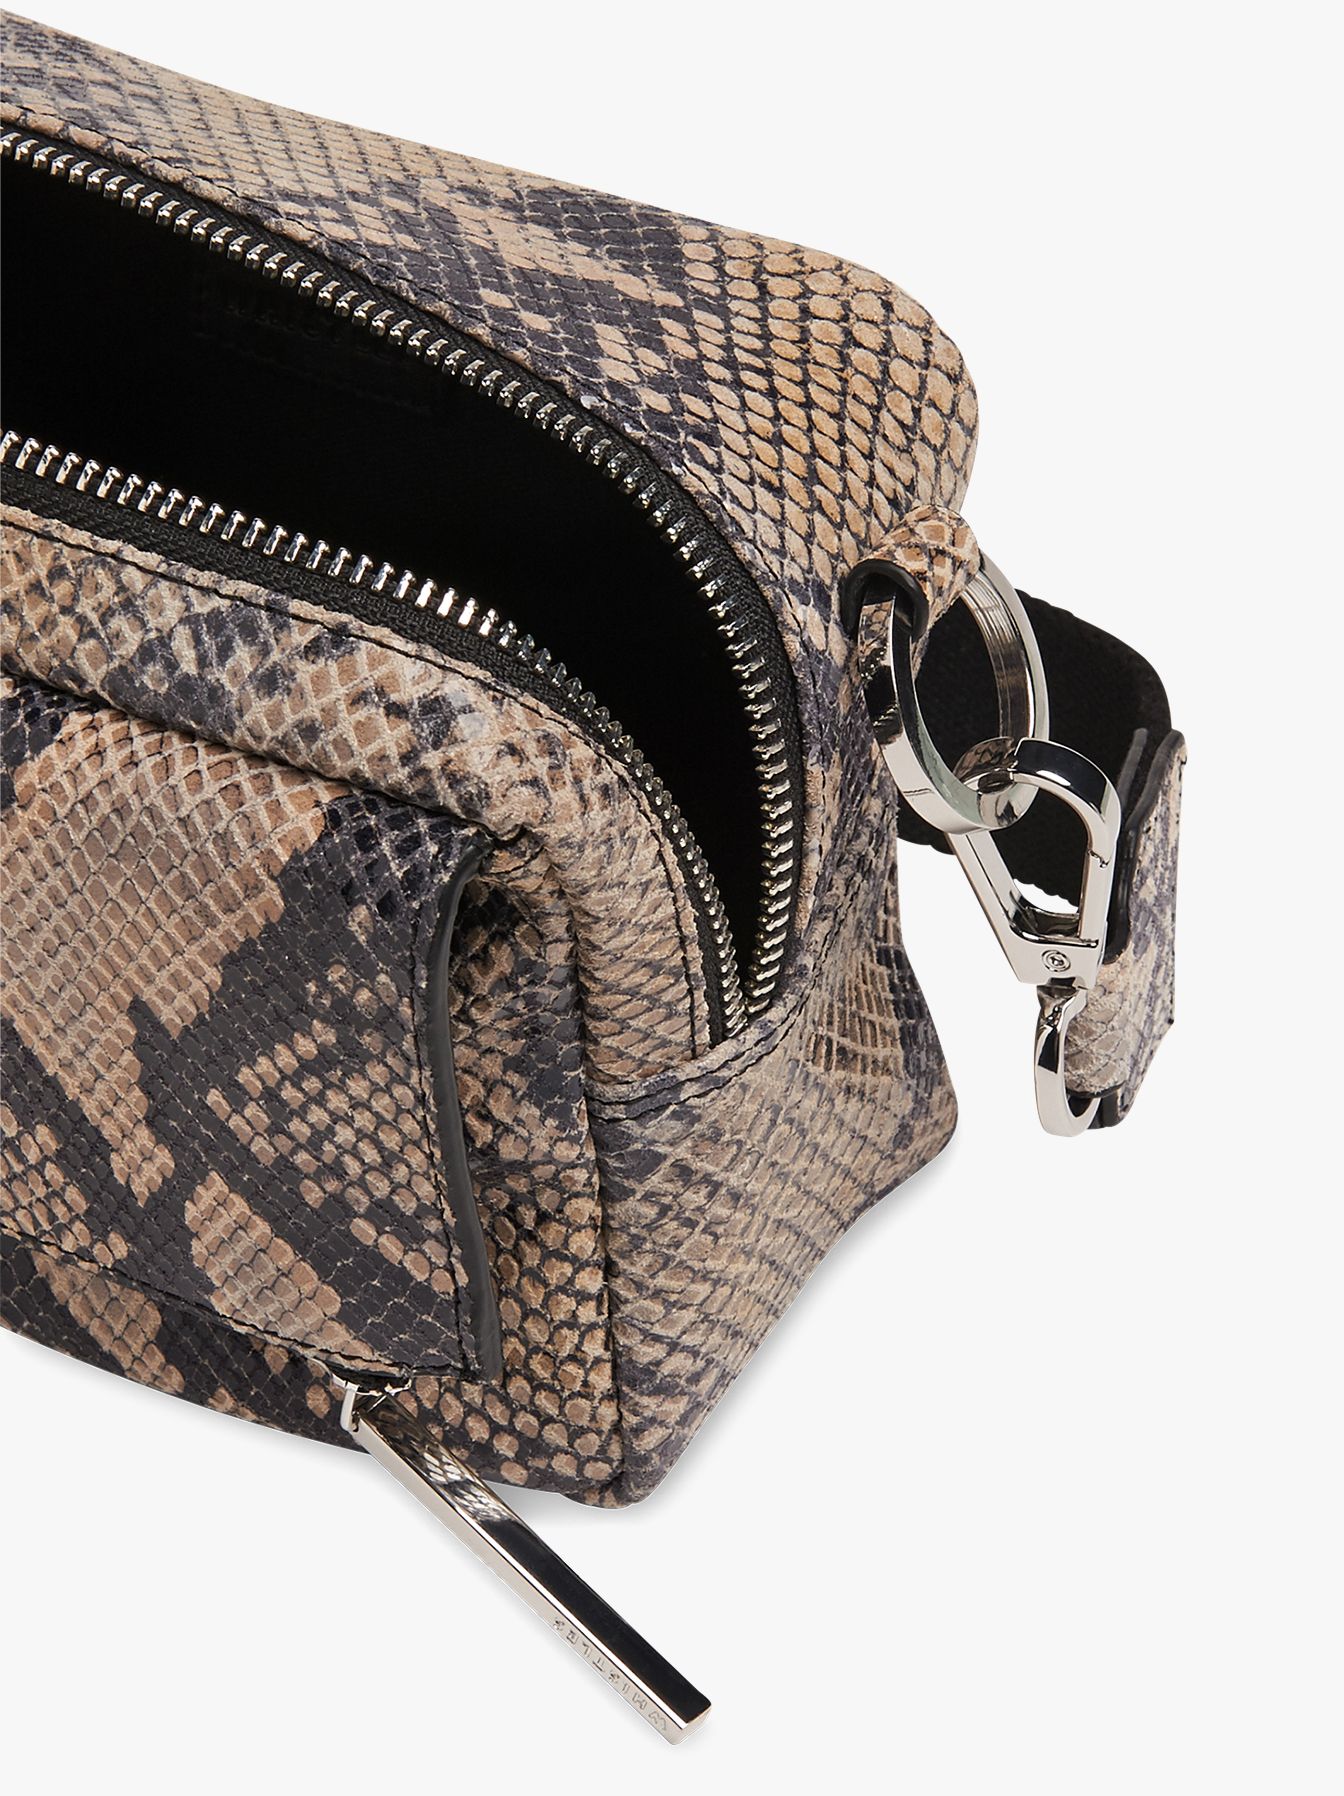 Whistles Bibi Snake Leather Cross Body Bag at John Lewis & Partners